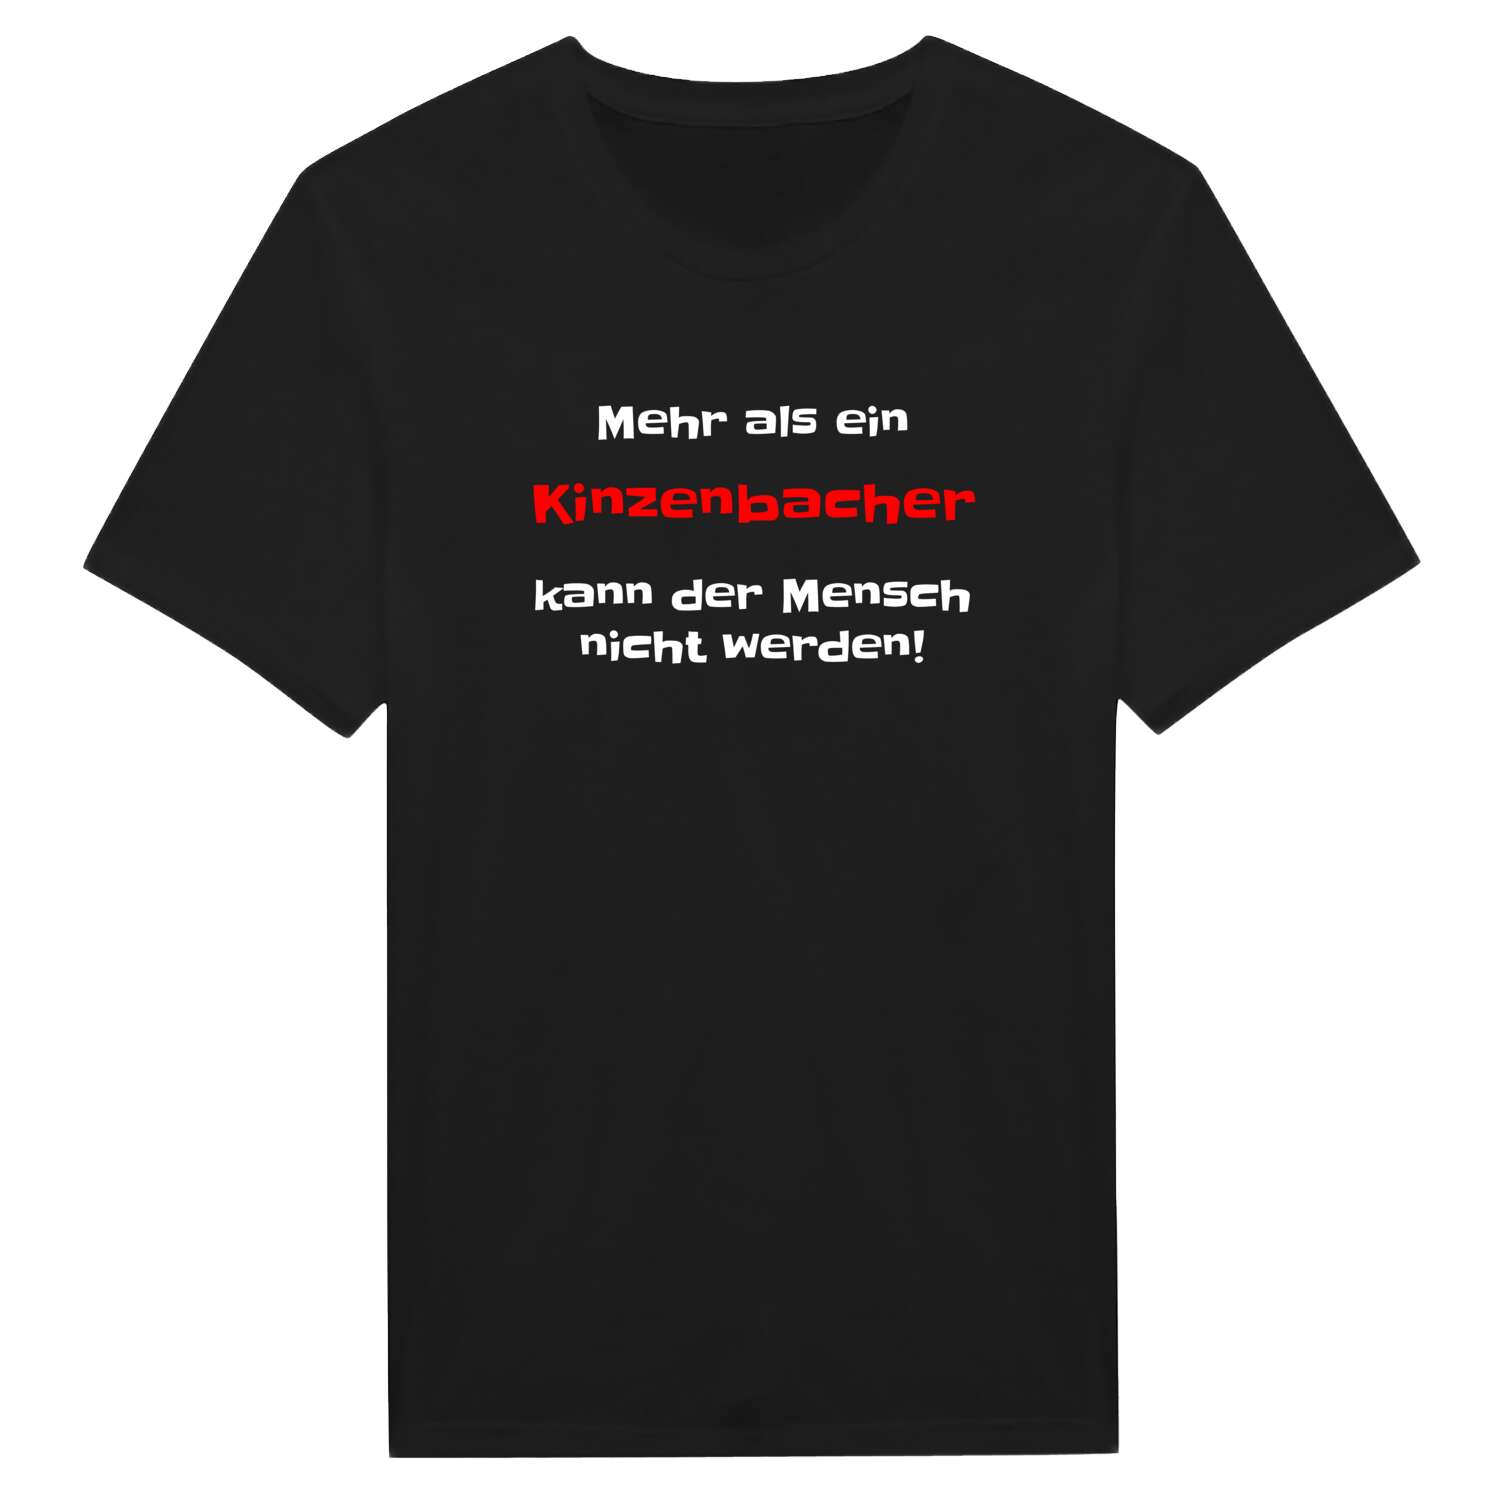 Kinzenbach T-Shirt »Mehr als ein«